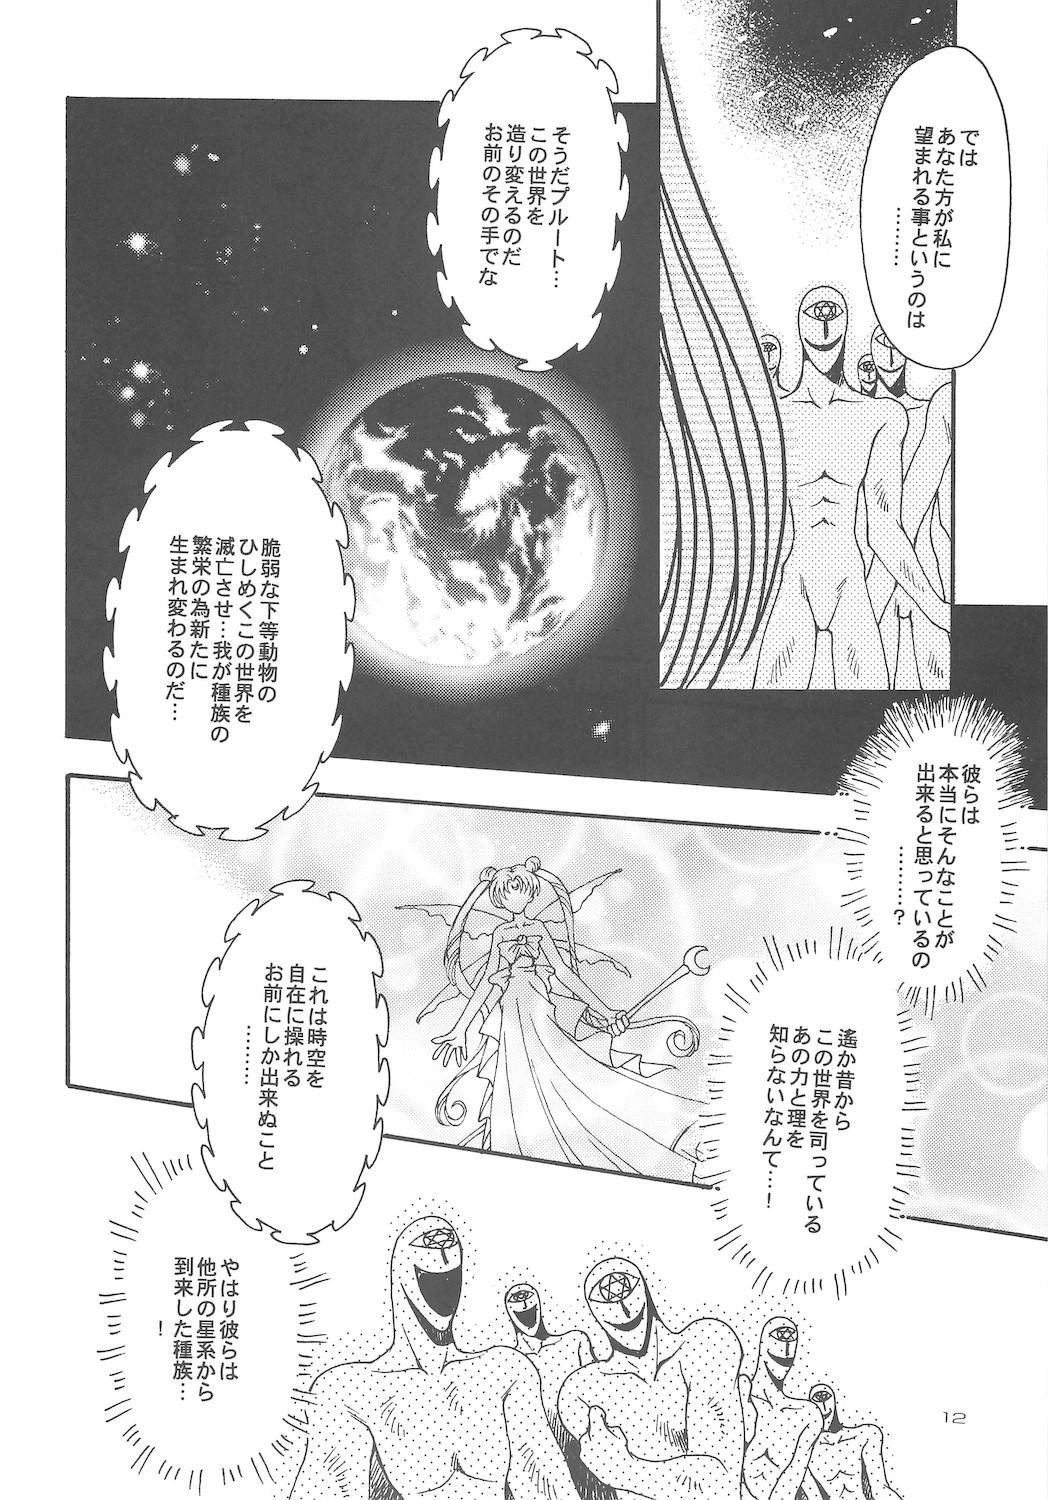 Massive Owaru Sekai dai 4 shou - Sailor moon Workout - Page 12